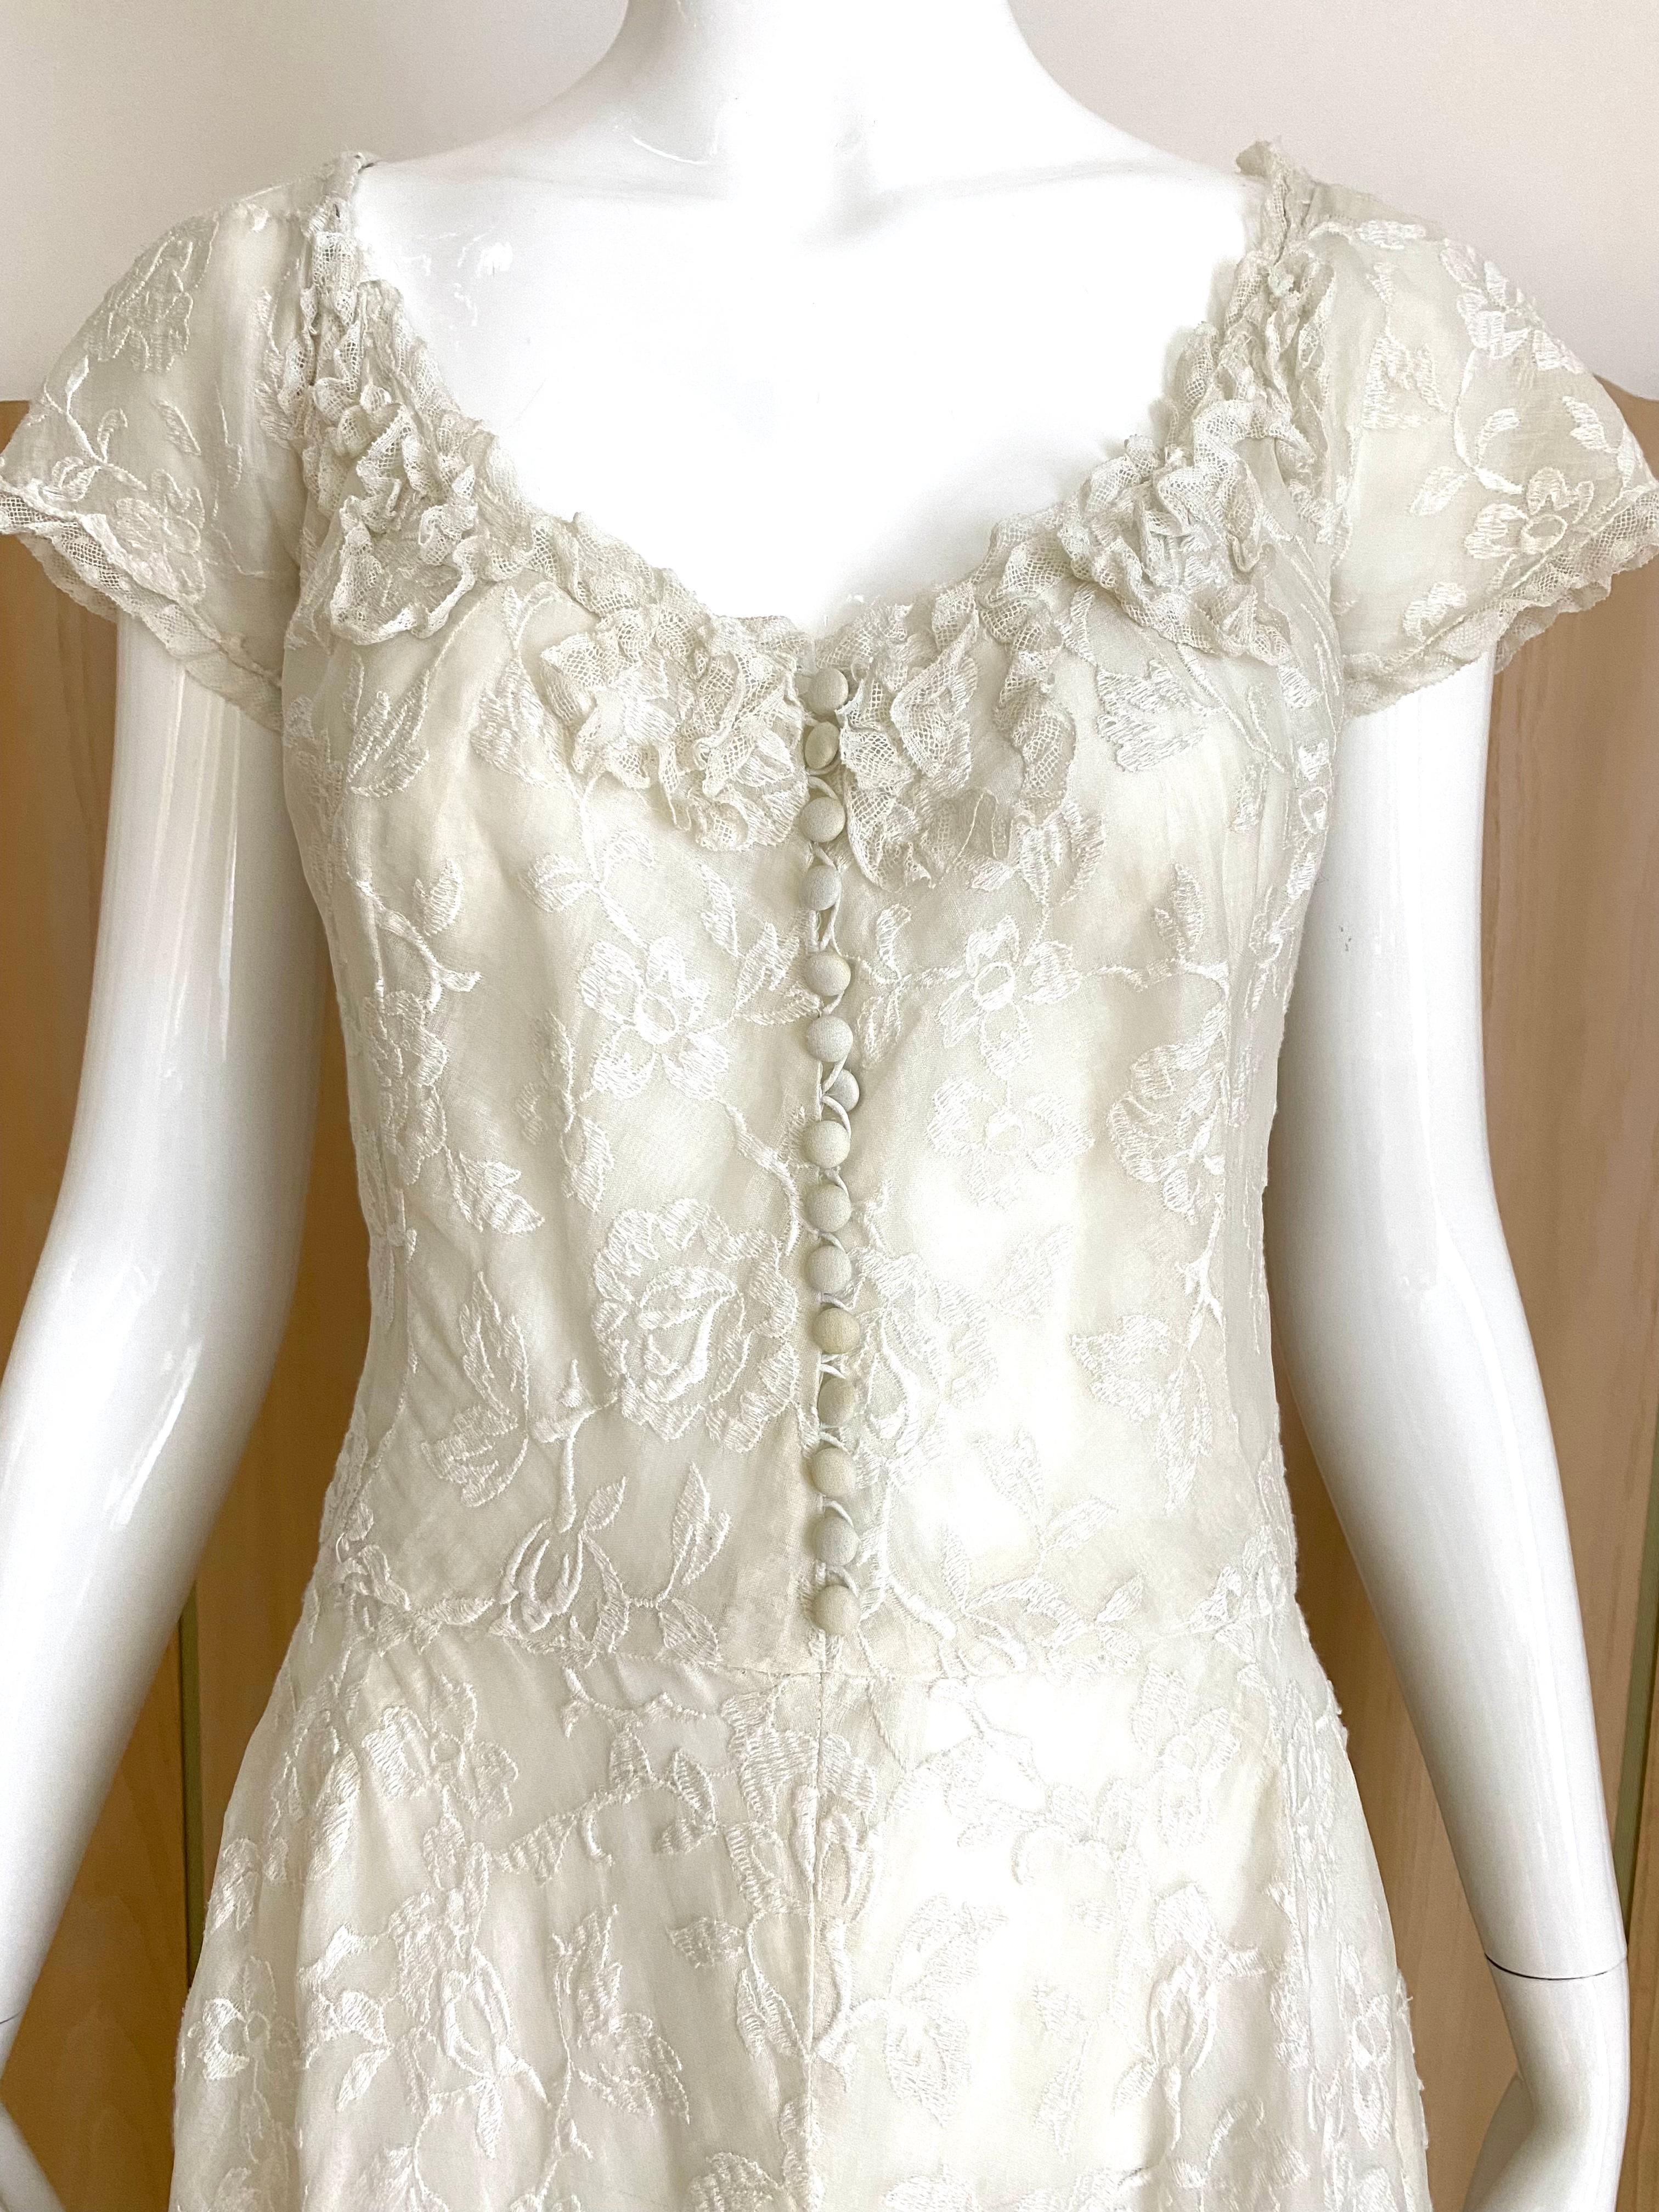 Robe de mariée d'été en coton blanc brodé, datant de la fin des années 1930 au début des années 1940.
 La robe a une crinoline en crin de cheval pour donner de l'ampleur. 
Taille : 4 - Petit
Poitrine : 36